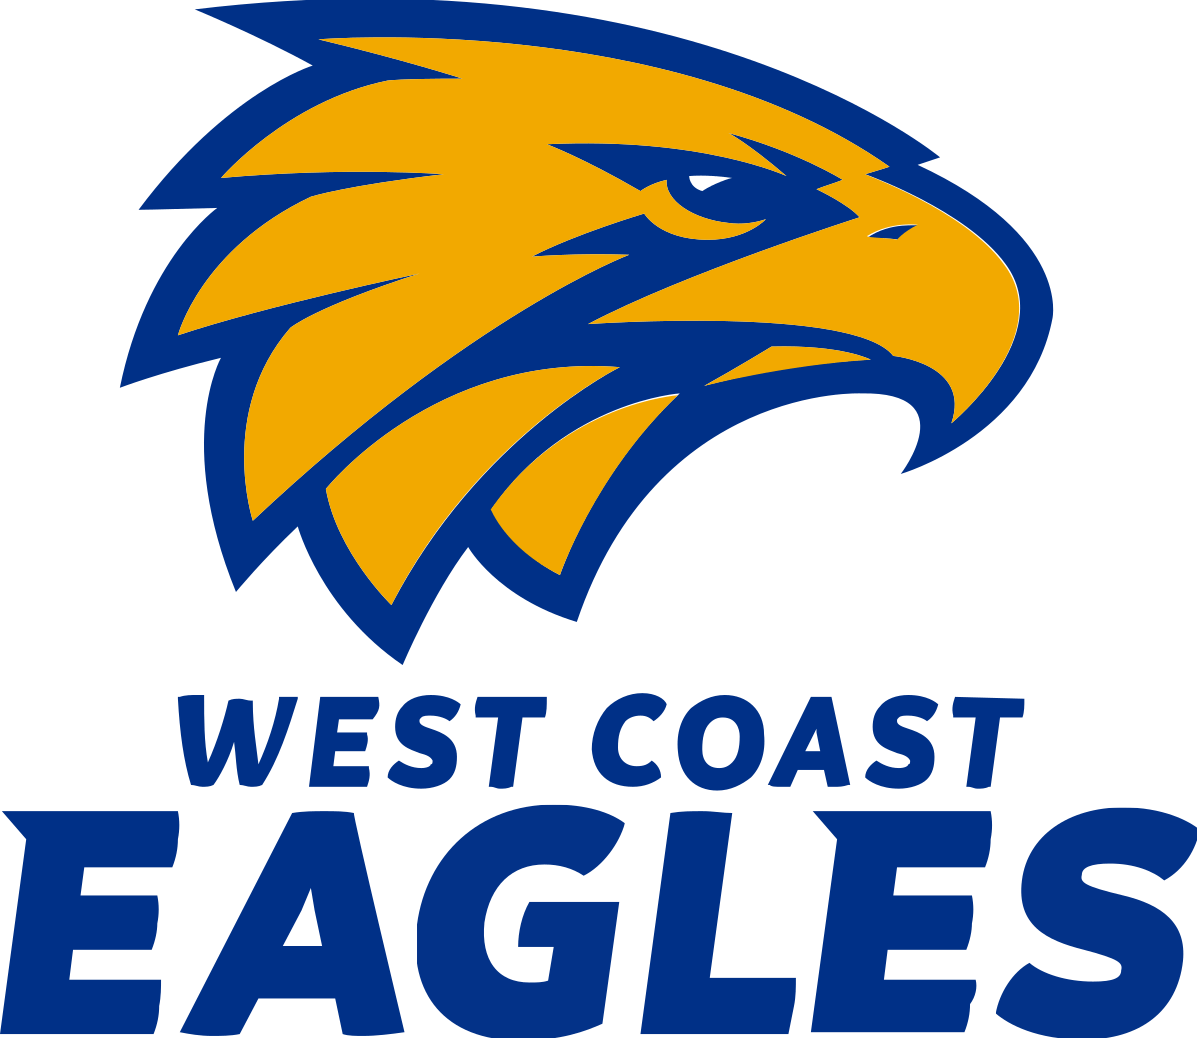 Gold and Blue Eagle Logo - West Coast Eagles